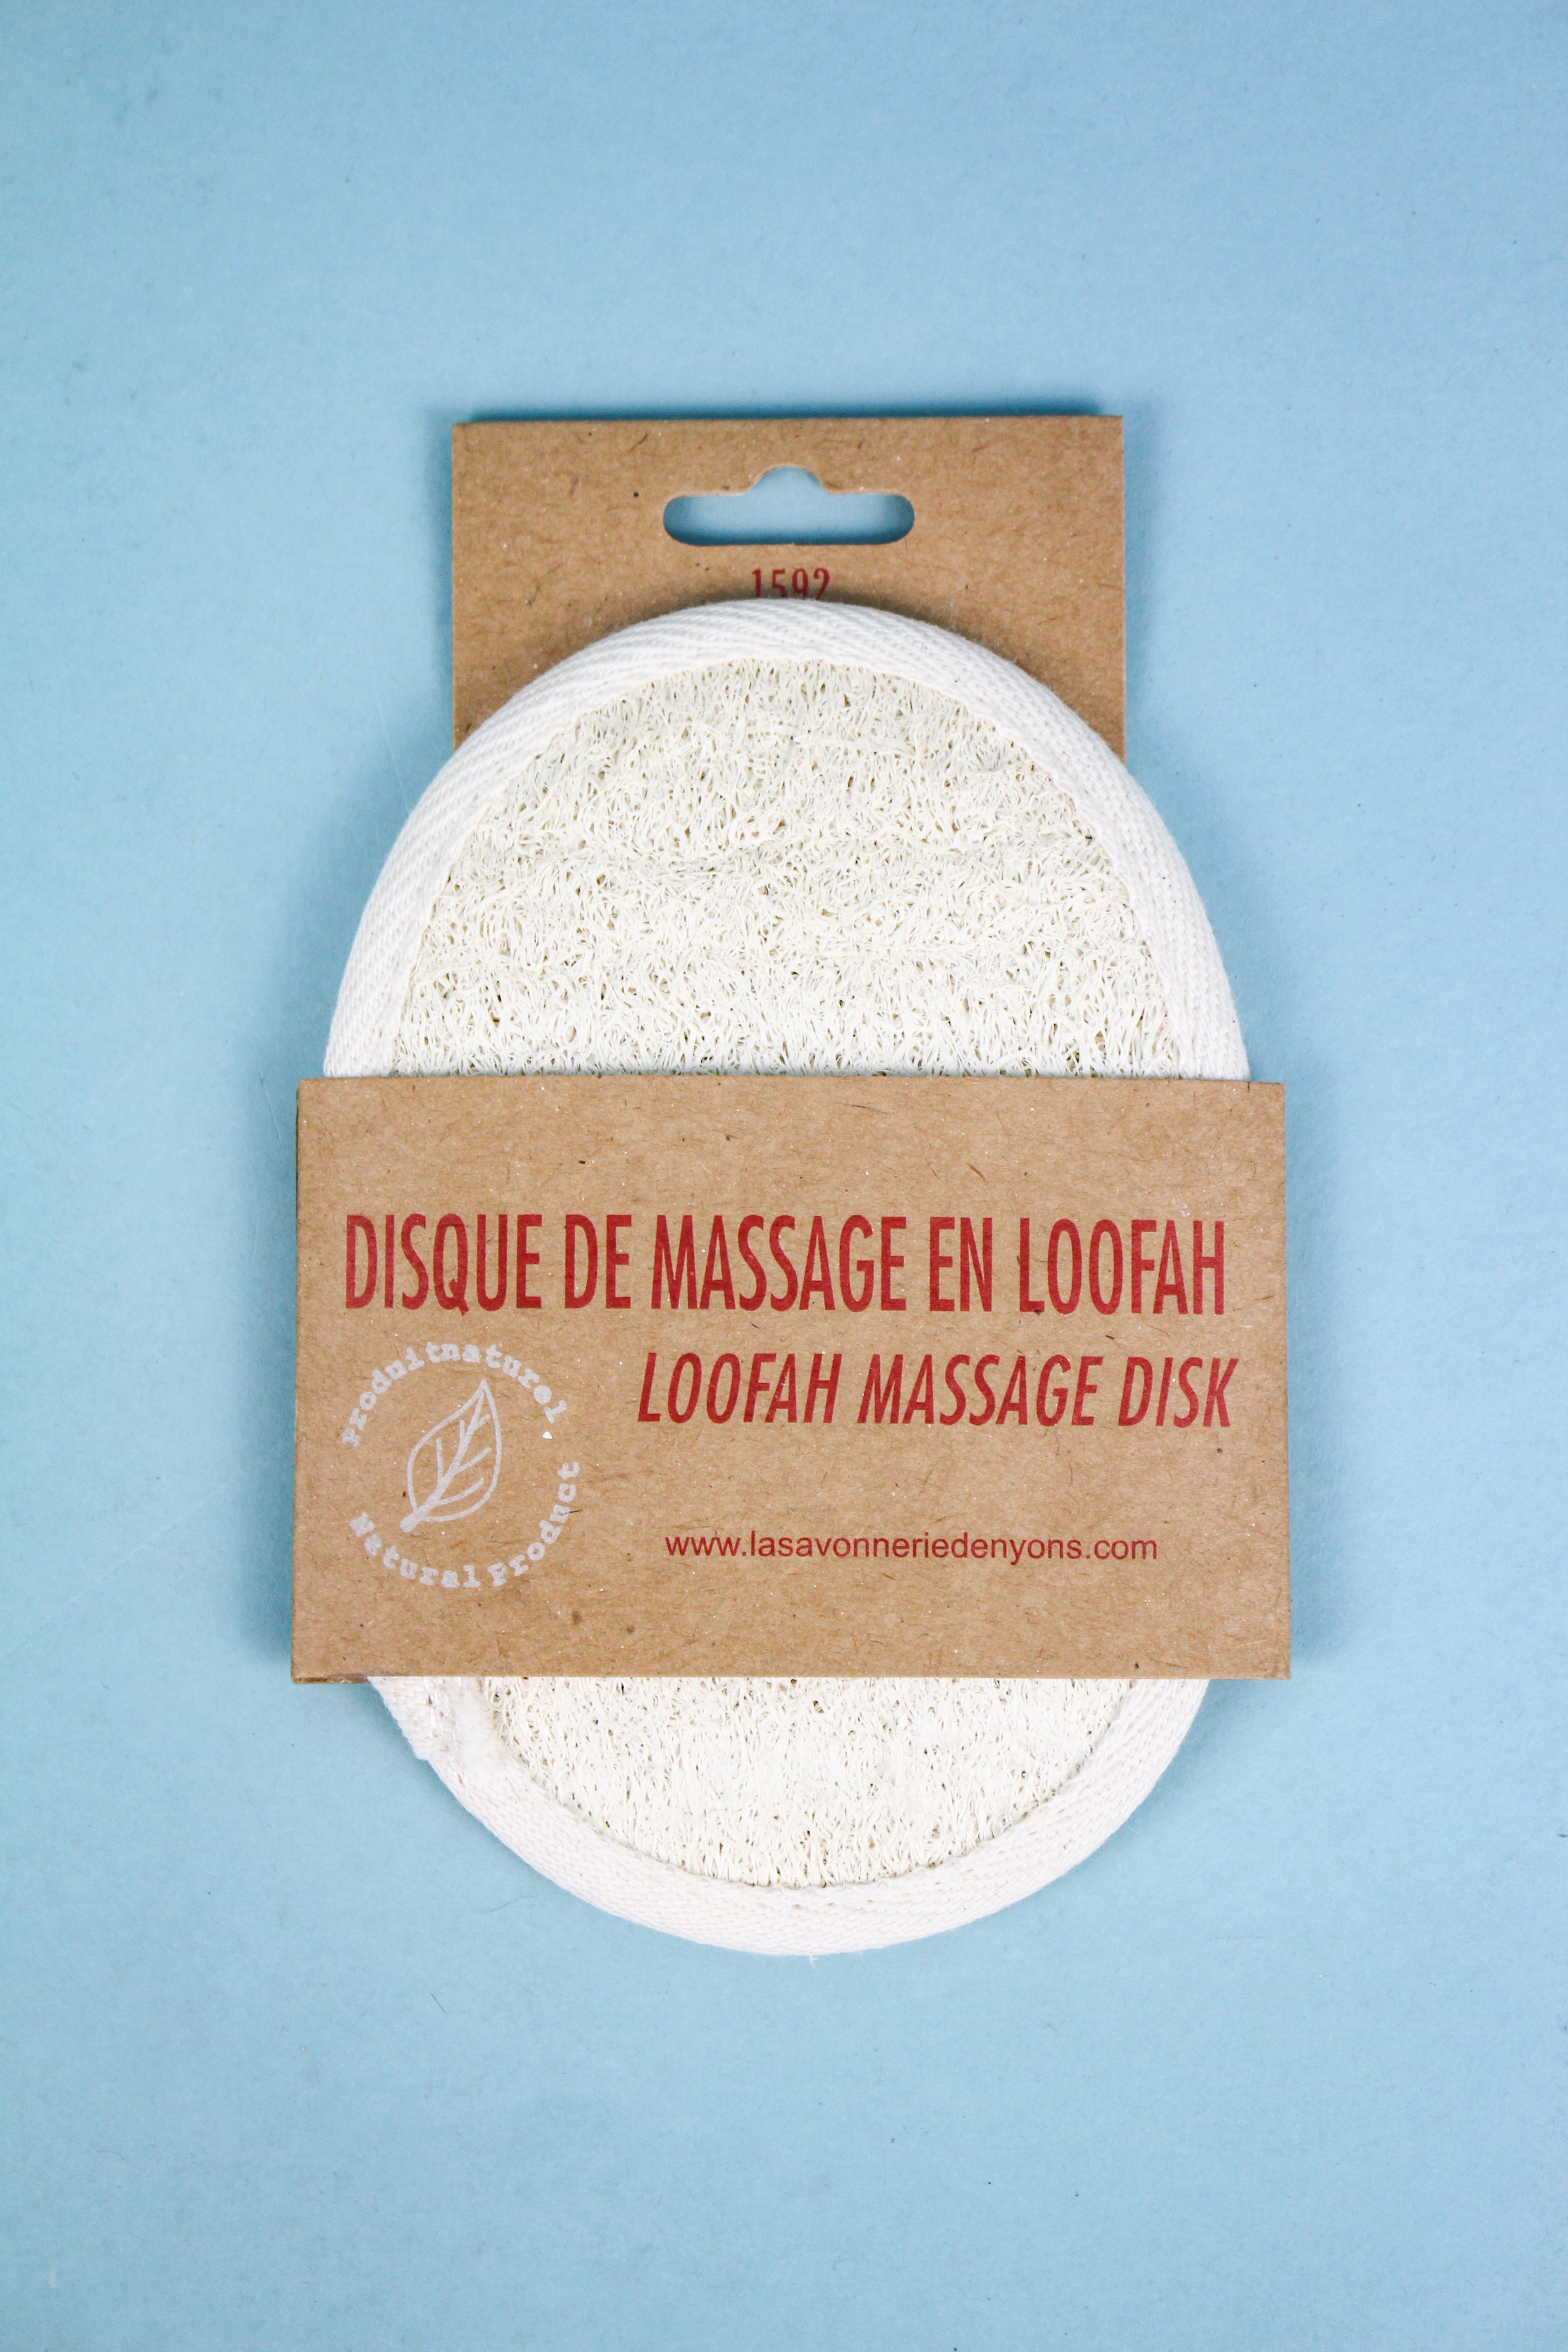 Loofah Massage Disk Bath & Body La Savonnerie de Nyons Bath & Body_Bar Soap Brand_La Savonnerie de Nyons Soap IMG_4195